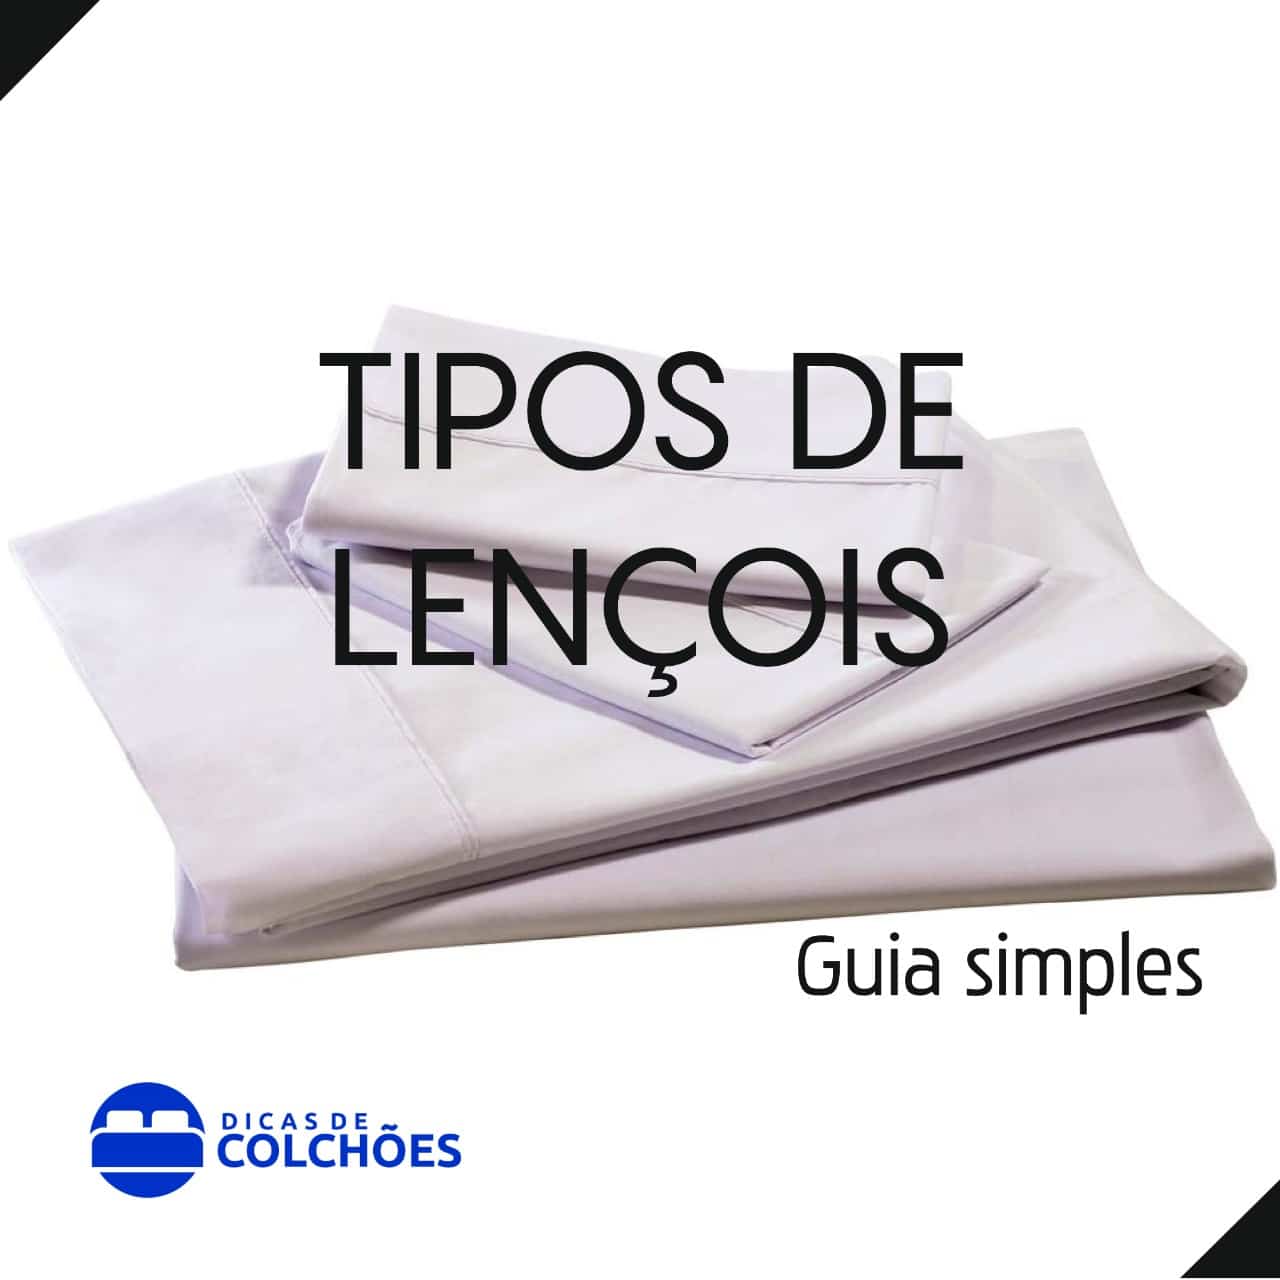 Tipos de lençóis – Guia simples